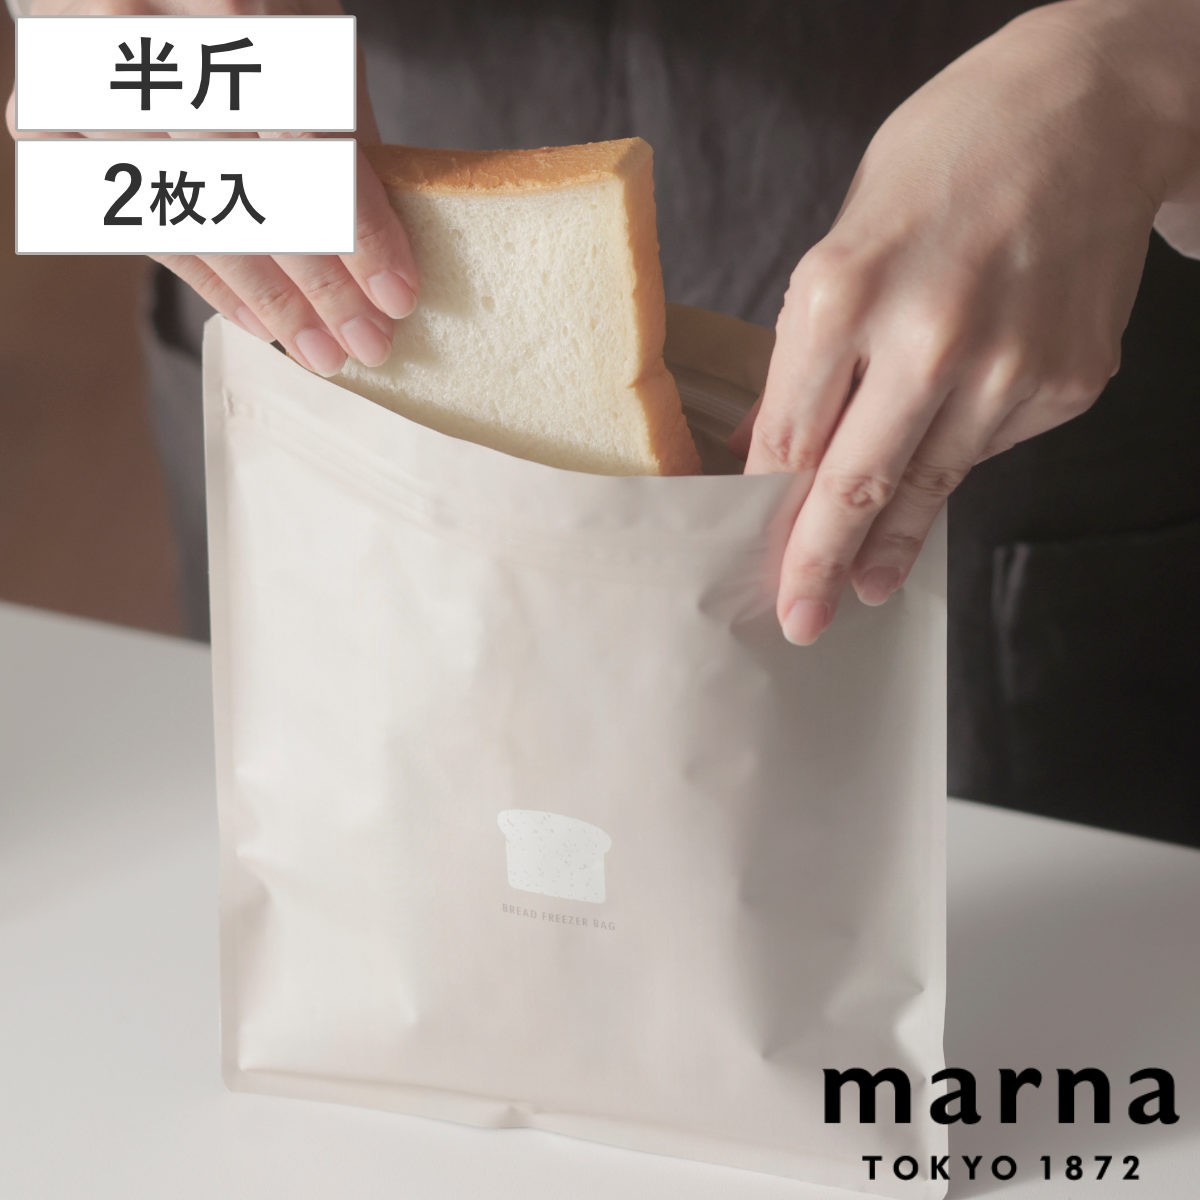 マーナ 保存袋 パン 冷凍保存袋 チャック付き